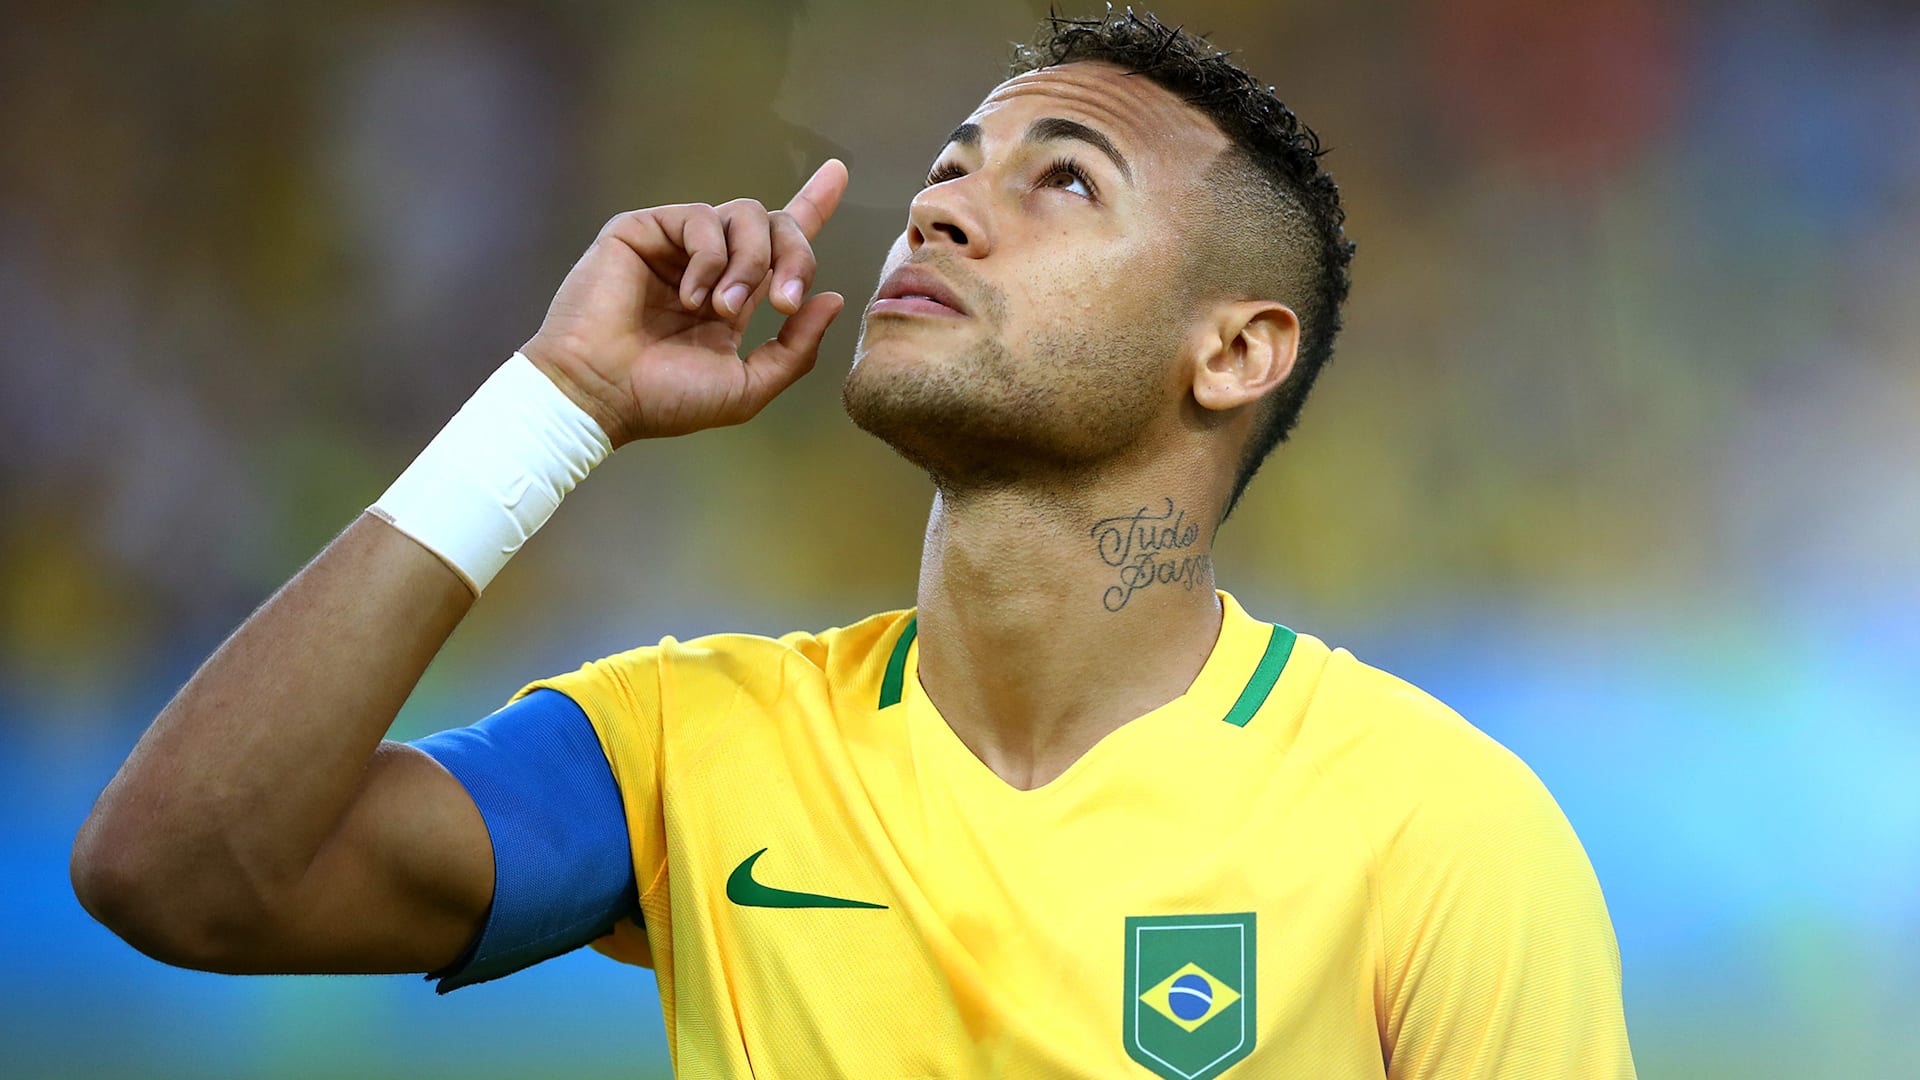 Neymar Junior Brazil Jersey Soccer Legends High Resolution 